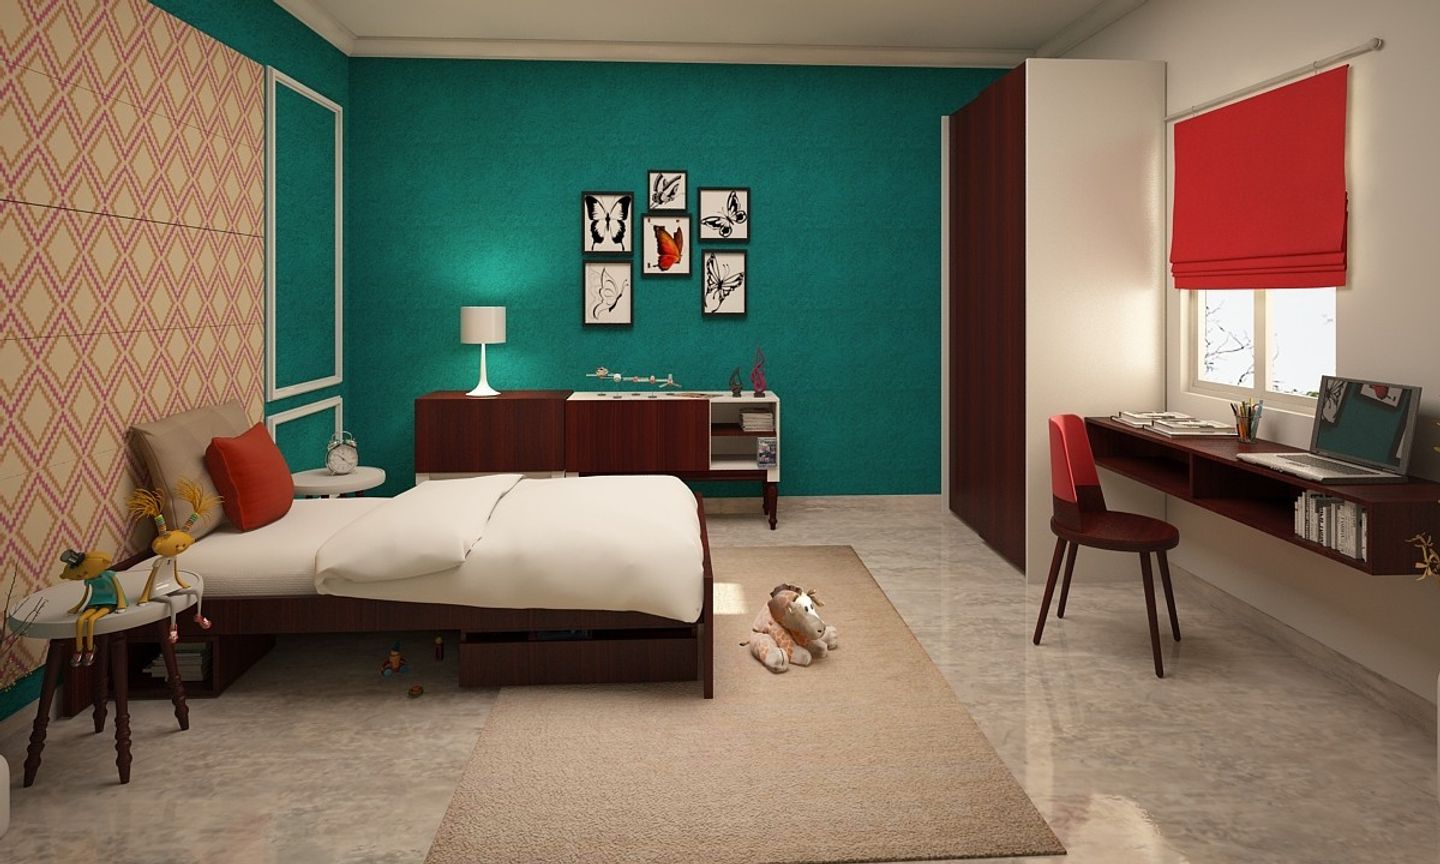 Modern Kid's Bedroom Design With Walnut Finshed Furniture